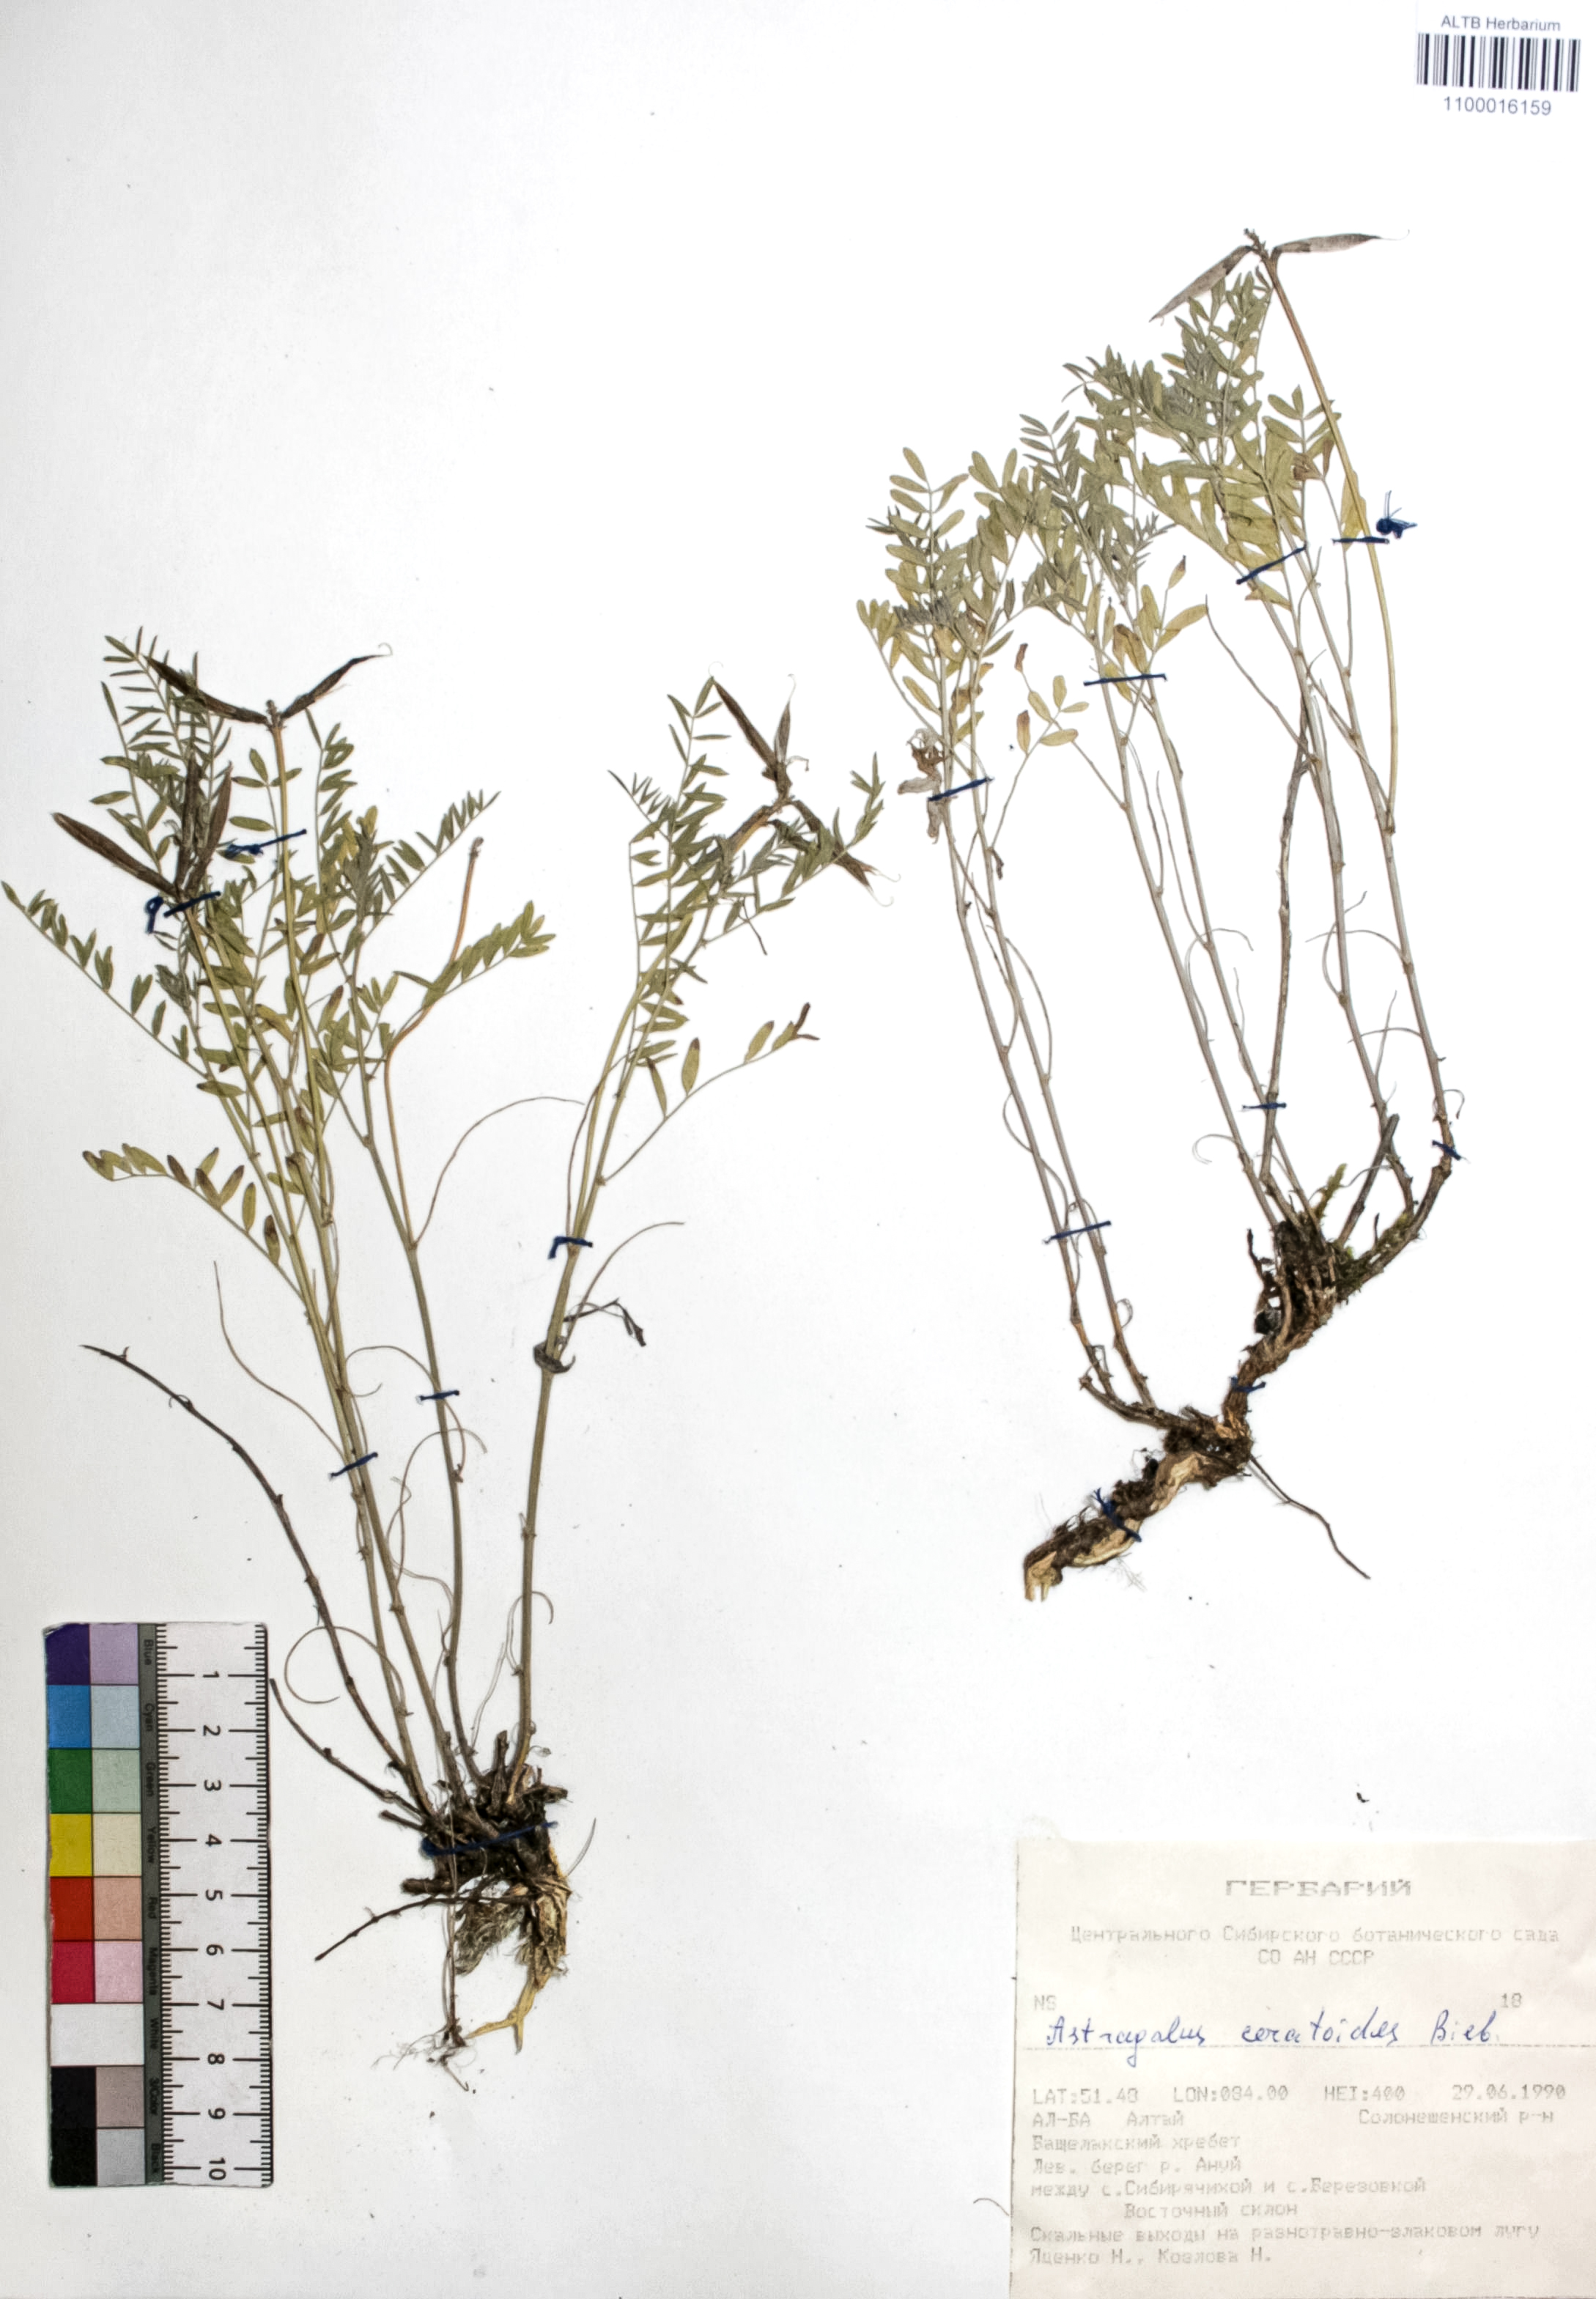 Astragalus ceratoides Bieb